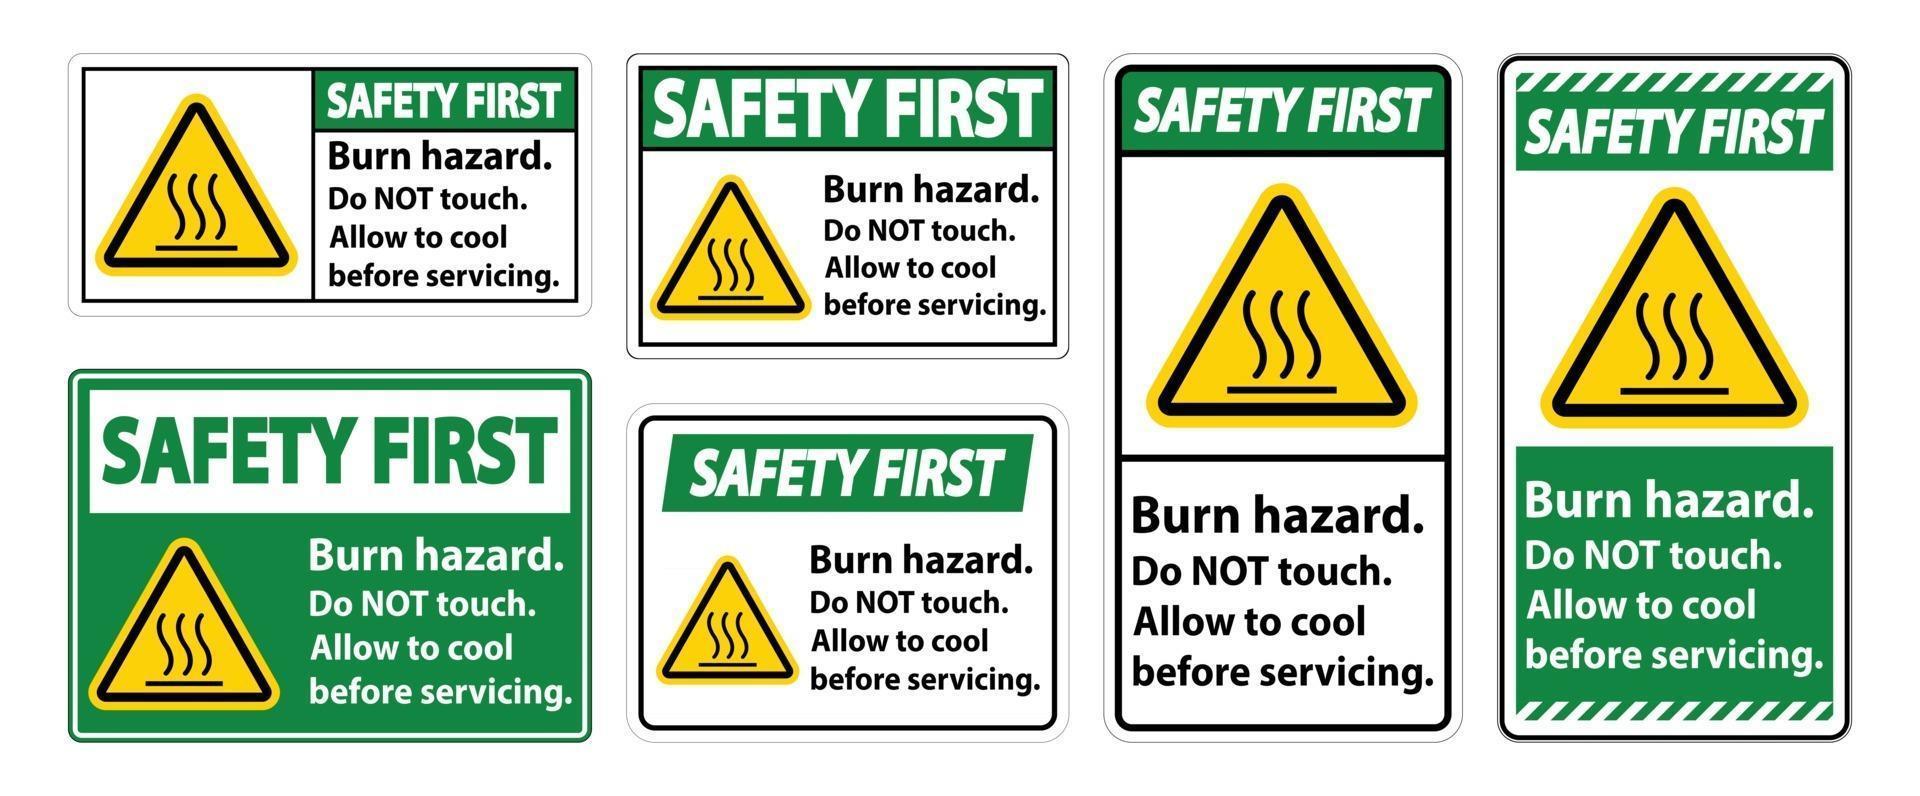 Sécurité d'abord sécurité des brûlures, ne touchez pas le signe de l'étiquette sur fond blanc vecteur